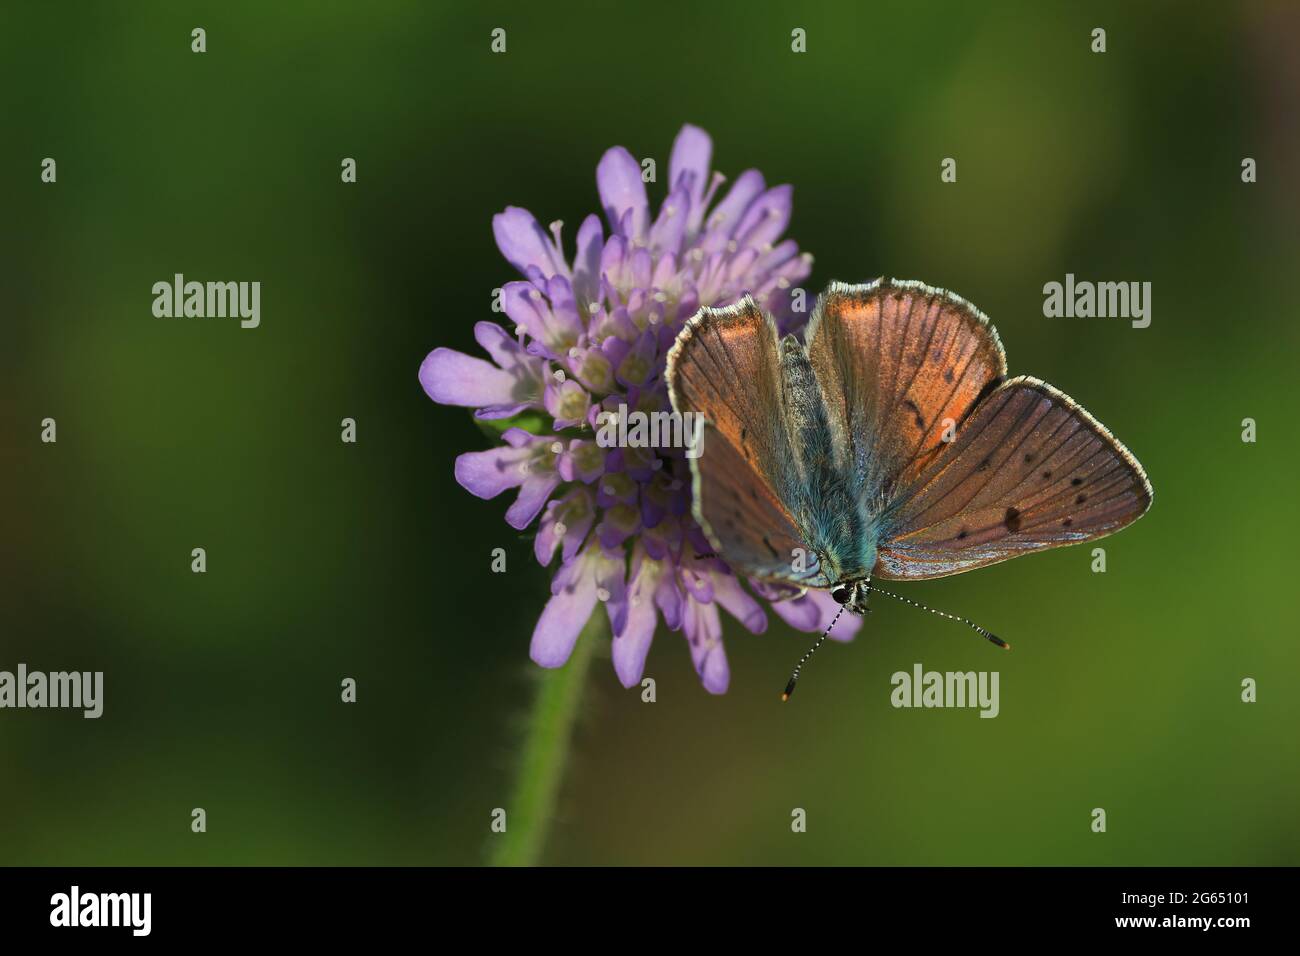 Schmetterlingsblume. Lycaena alciphron, violett geschosstes Kupfer. Ein kupferbrauner Schmetterling mit ausgebreiteten Flügeln sitzt auf einer violetten Blume. Platz für Text. Stockfoto